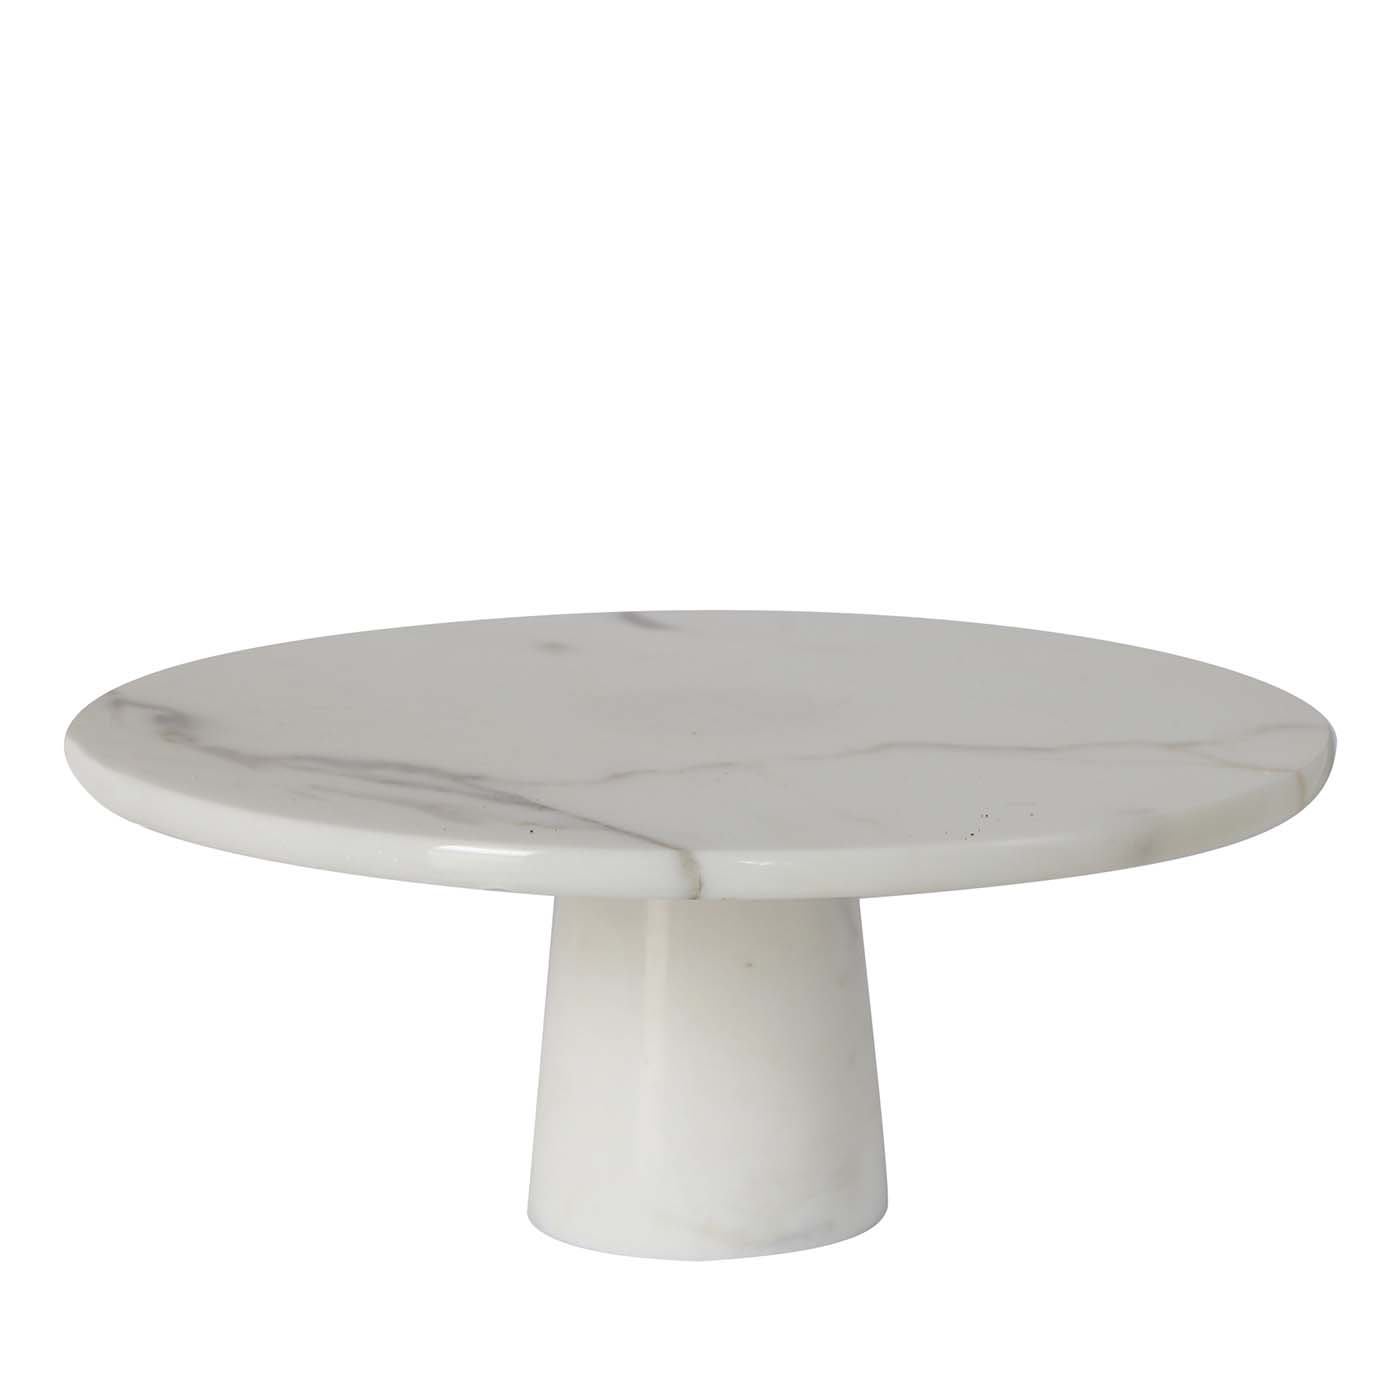 Cake Stand in White Statuario Marble - Carrara Home Design